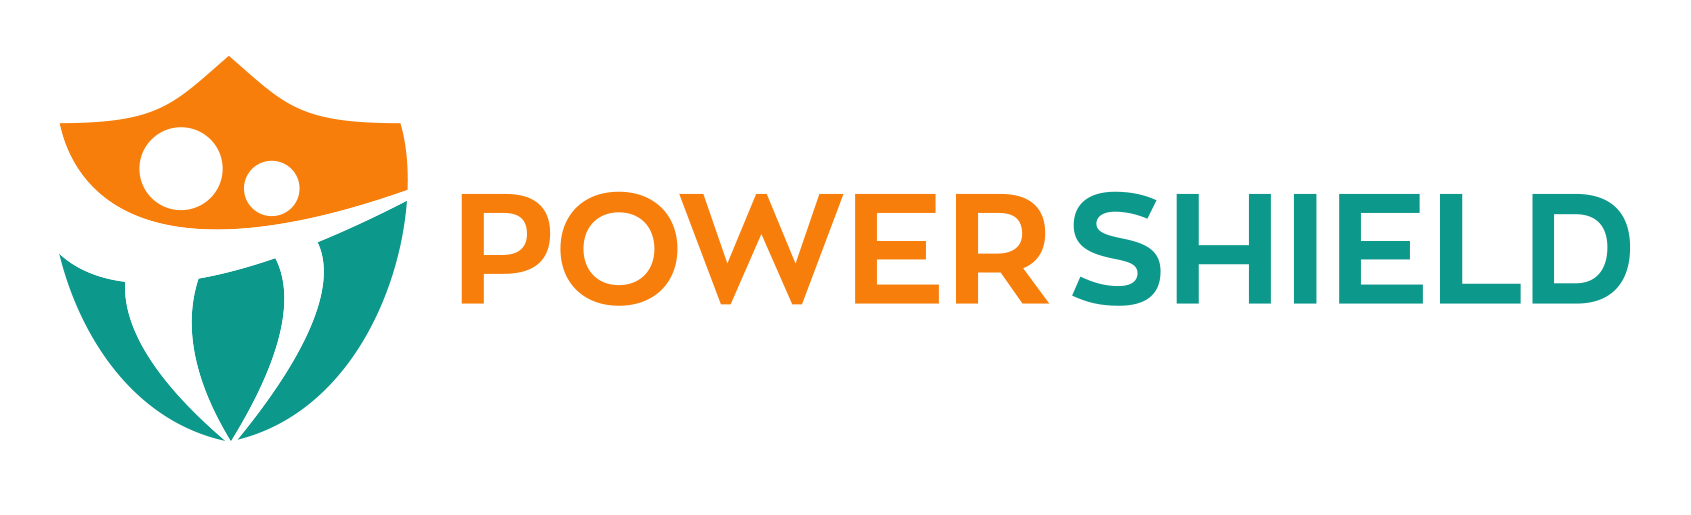 powershield_logo